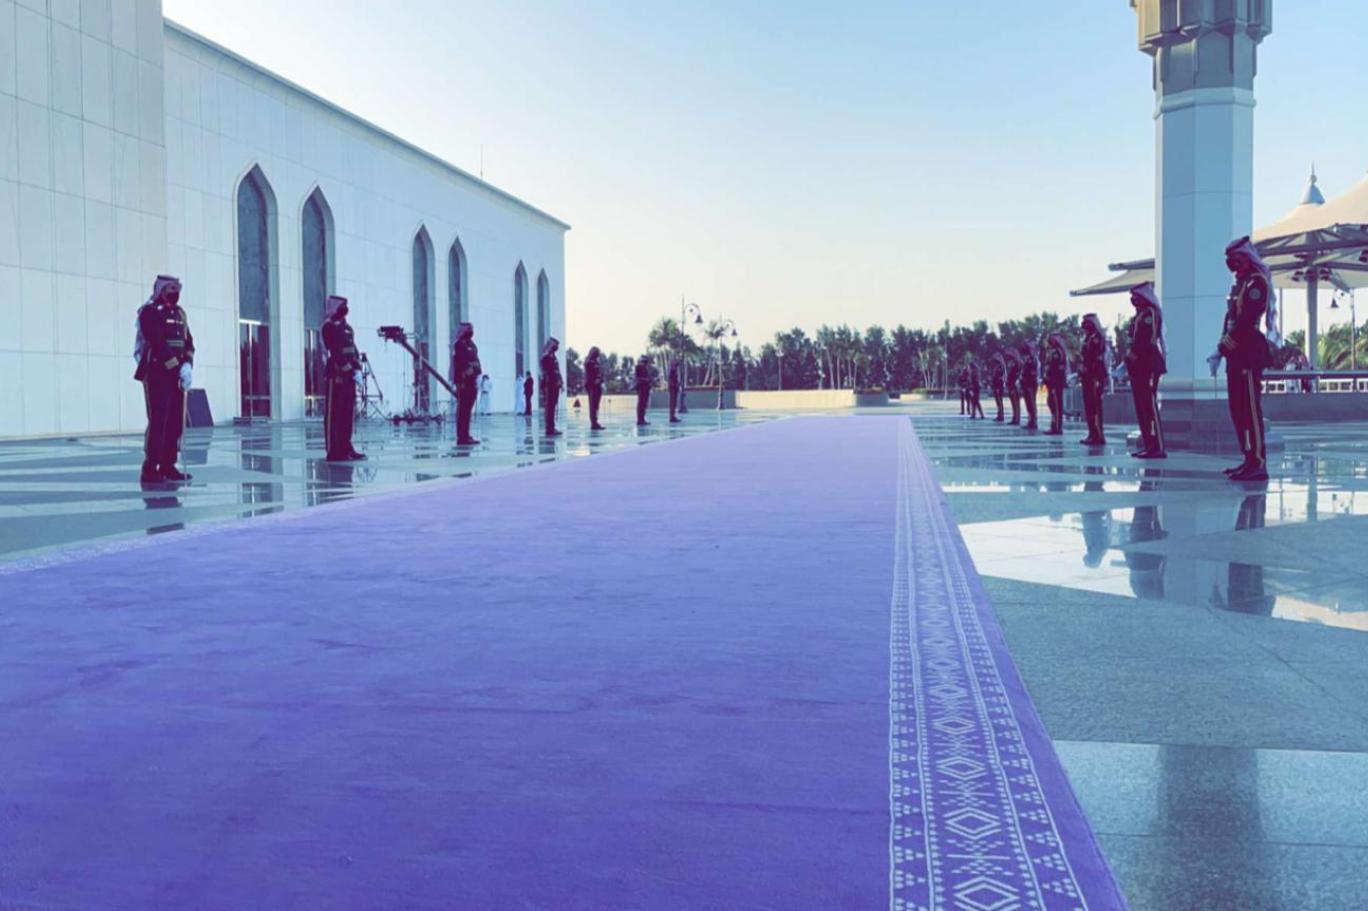 السعودية تختار "البنفسجي" لونًا للسجاد الخاص بمراسم الاستقبال الرسمية